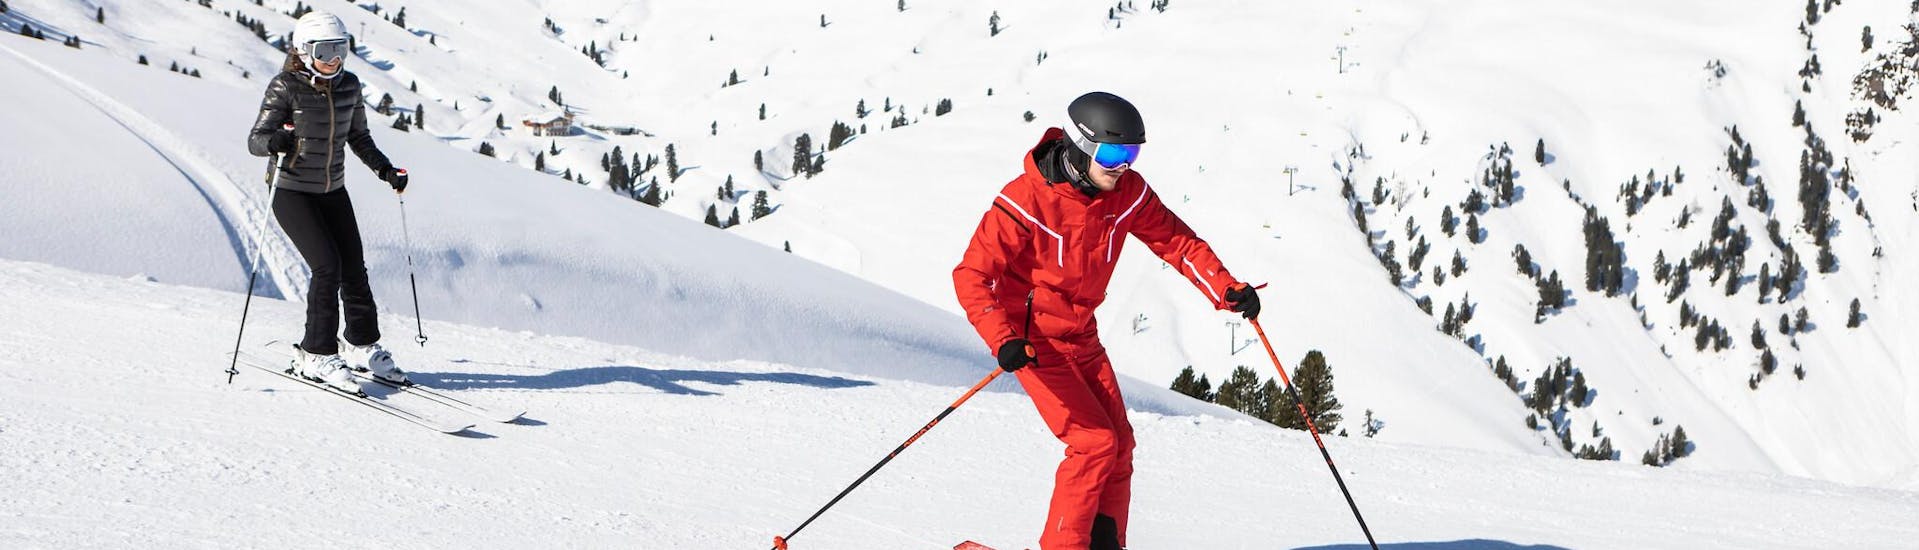 Un skieur travaille sa technique de ski avec son moniteur de ski lors d'un cours particulier de ski dans la destination de ski Seefeld.